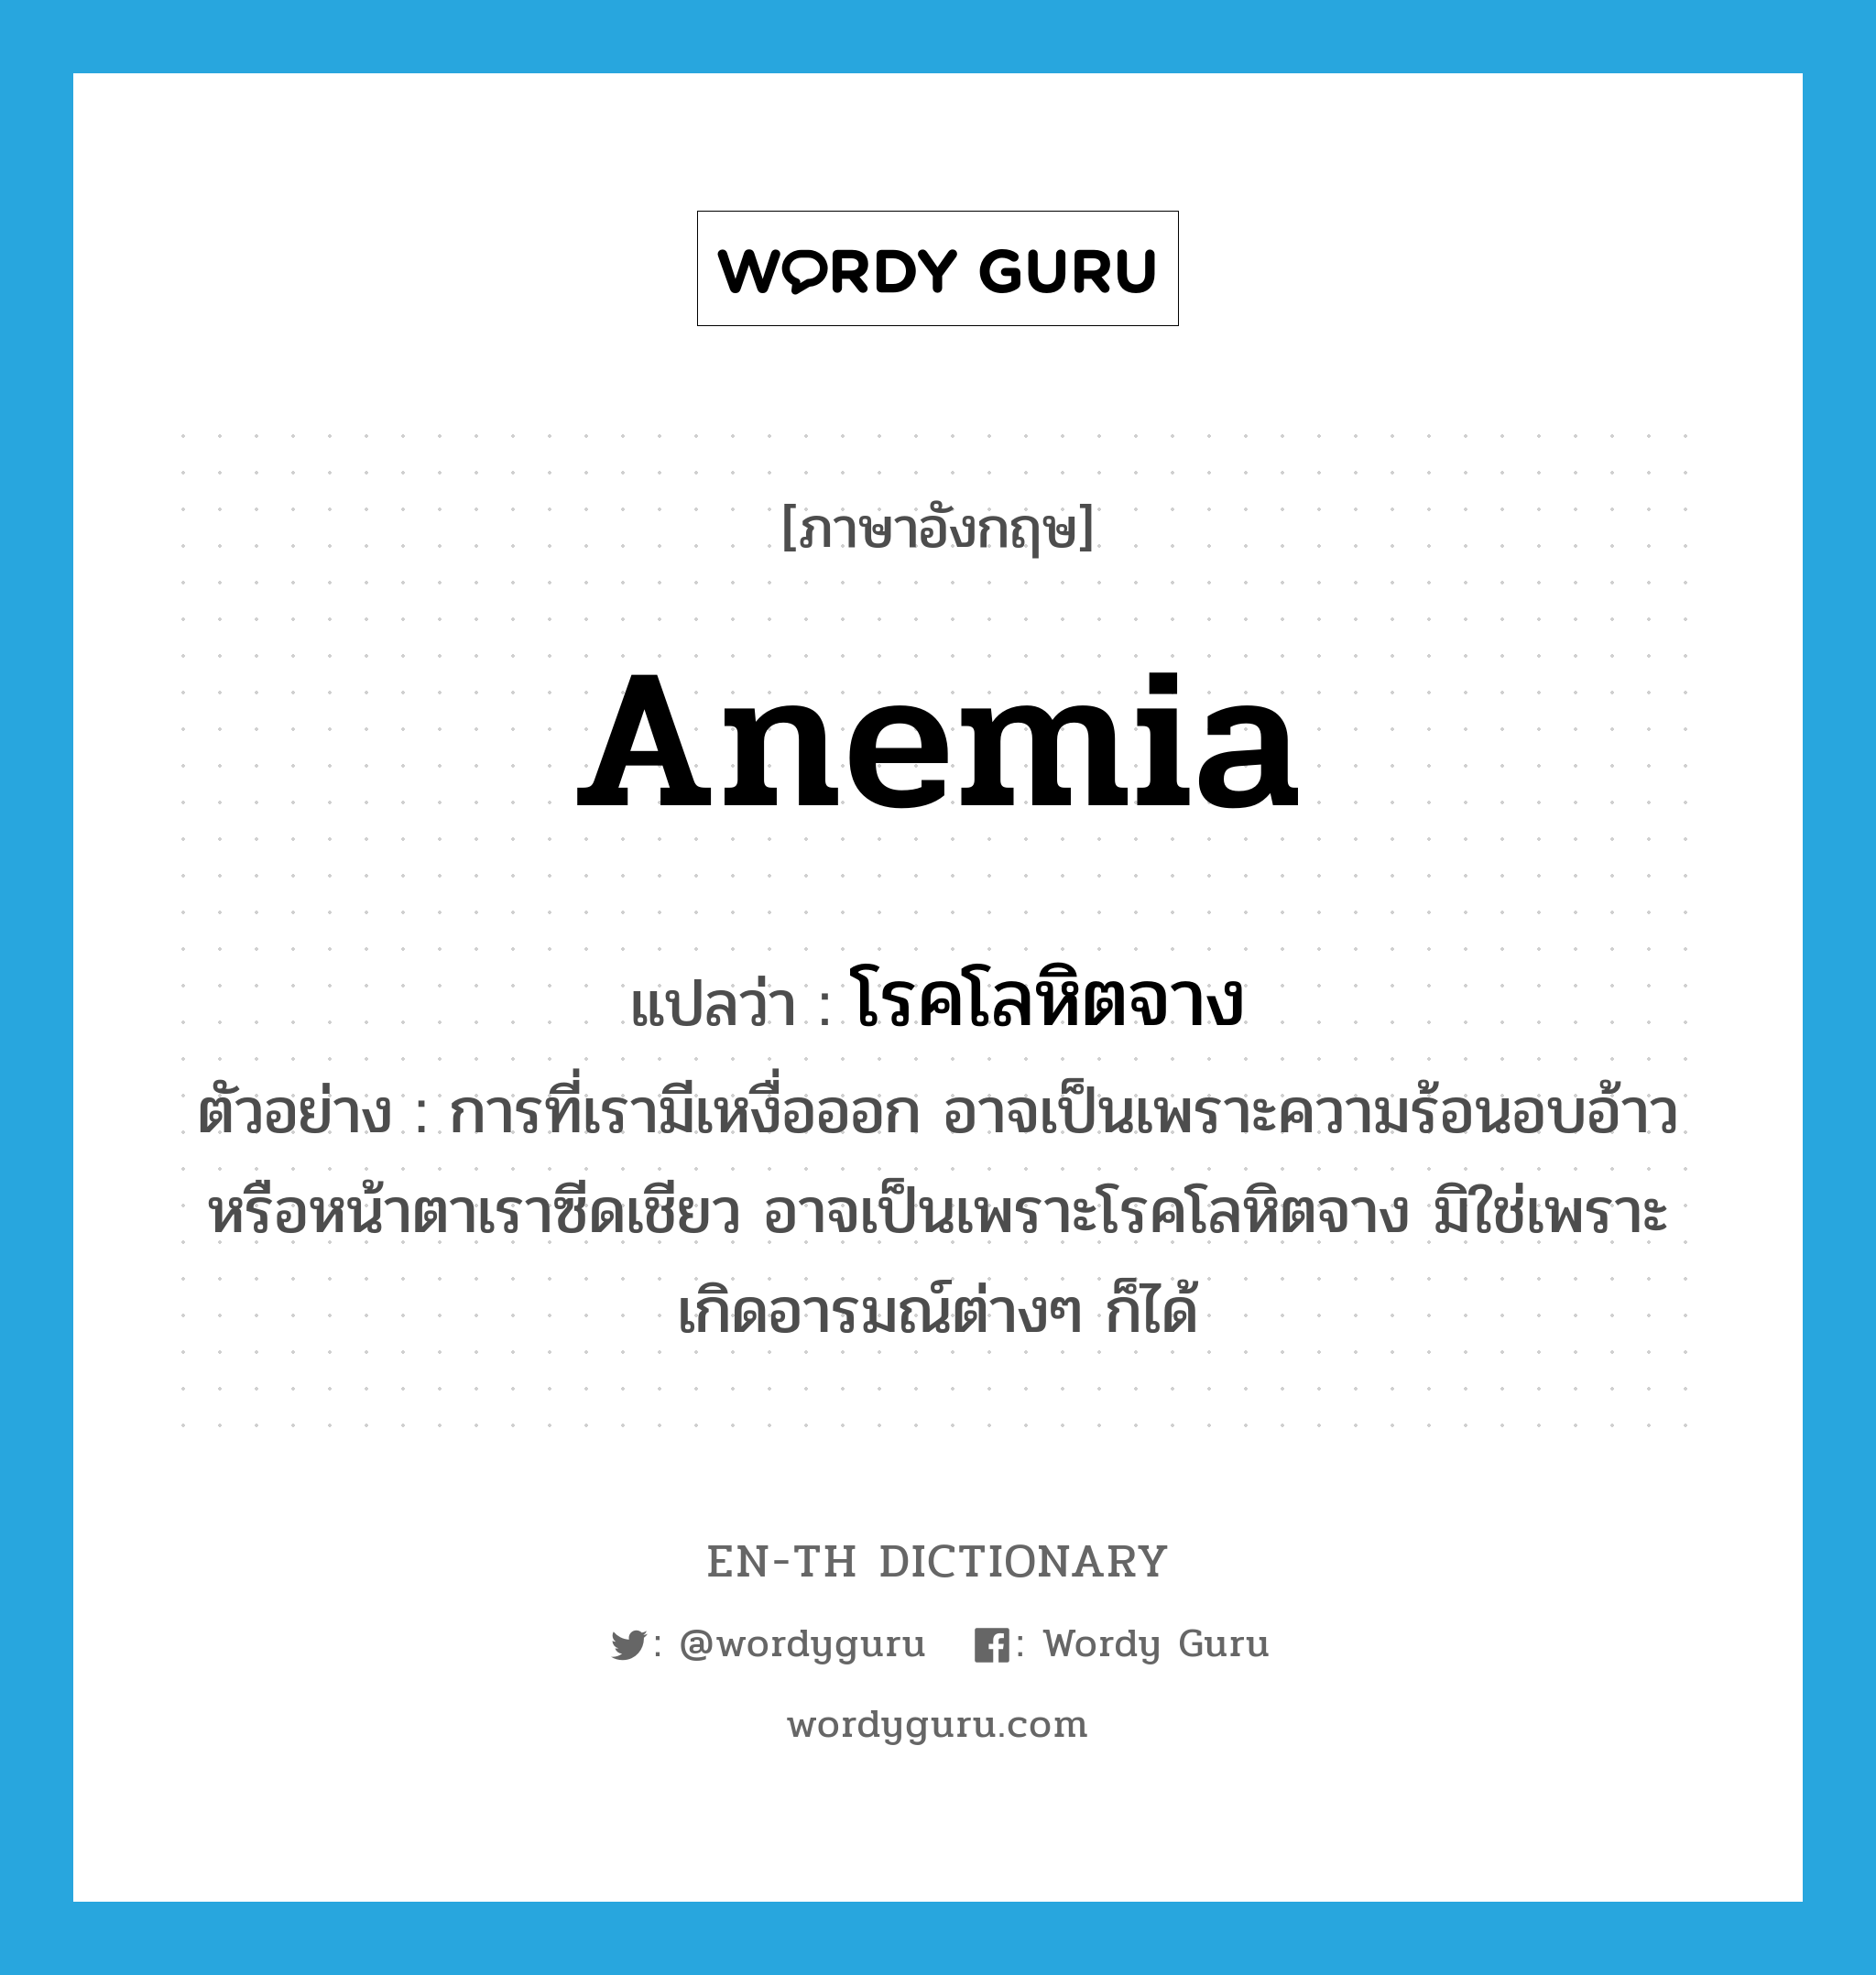 anemia แปลว่า?, คำศัพท์ภาษาอังกฤษ anemia แปลว่า โรคโลหิตจาง ประเภท N ตัวอย่าง การที่เรามีเหงื่อออก อาจเป็นเพราะความร้อนอบอ้าว หรือหน้าตาเราซีดเชียว อาจเป็นเพราะโรคโลหิตจาง มิใช่เพราะเกิดอารมณ์ต่างๆ ก็ได้ หมวด N